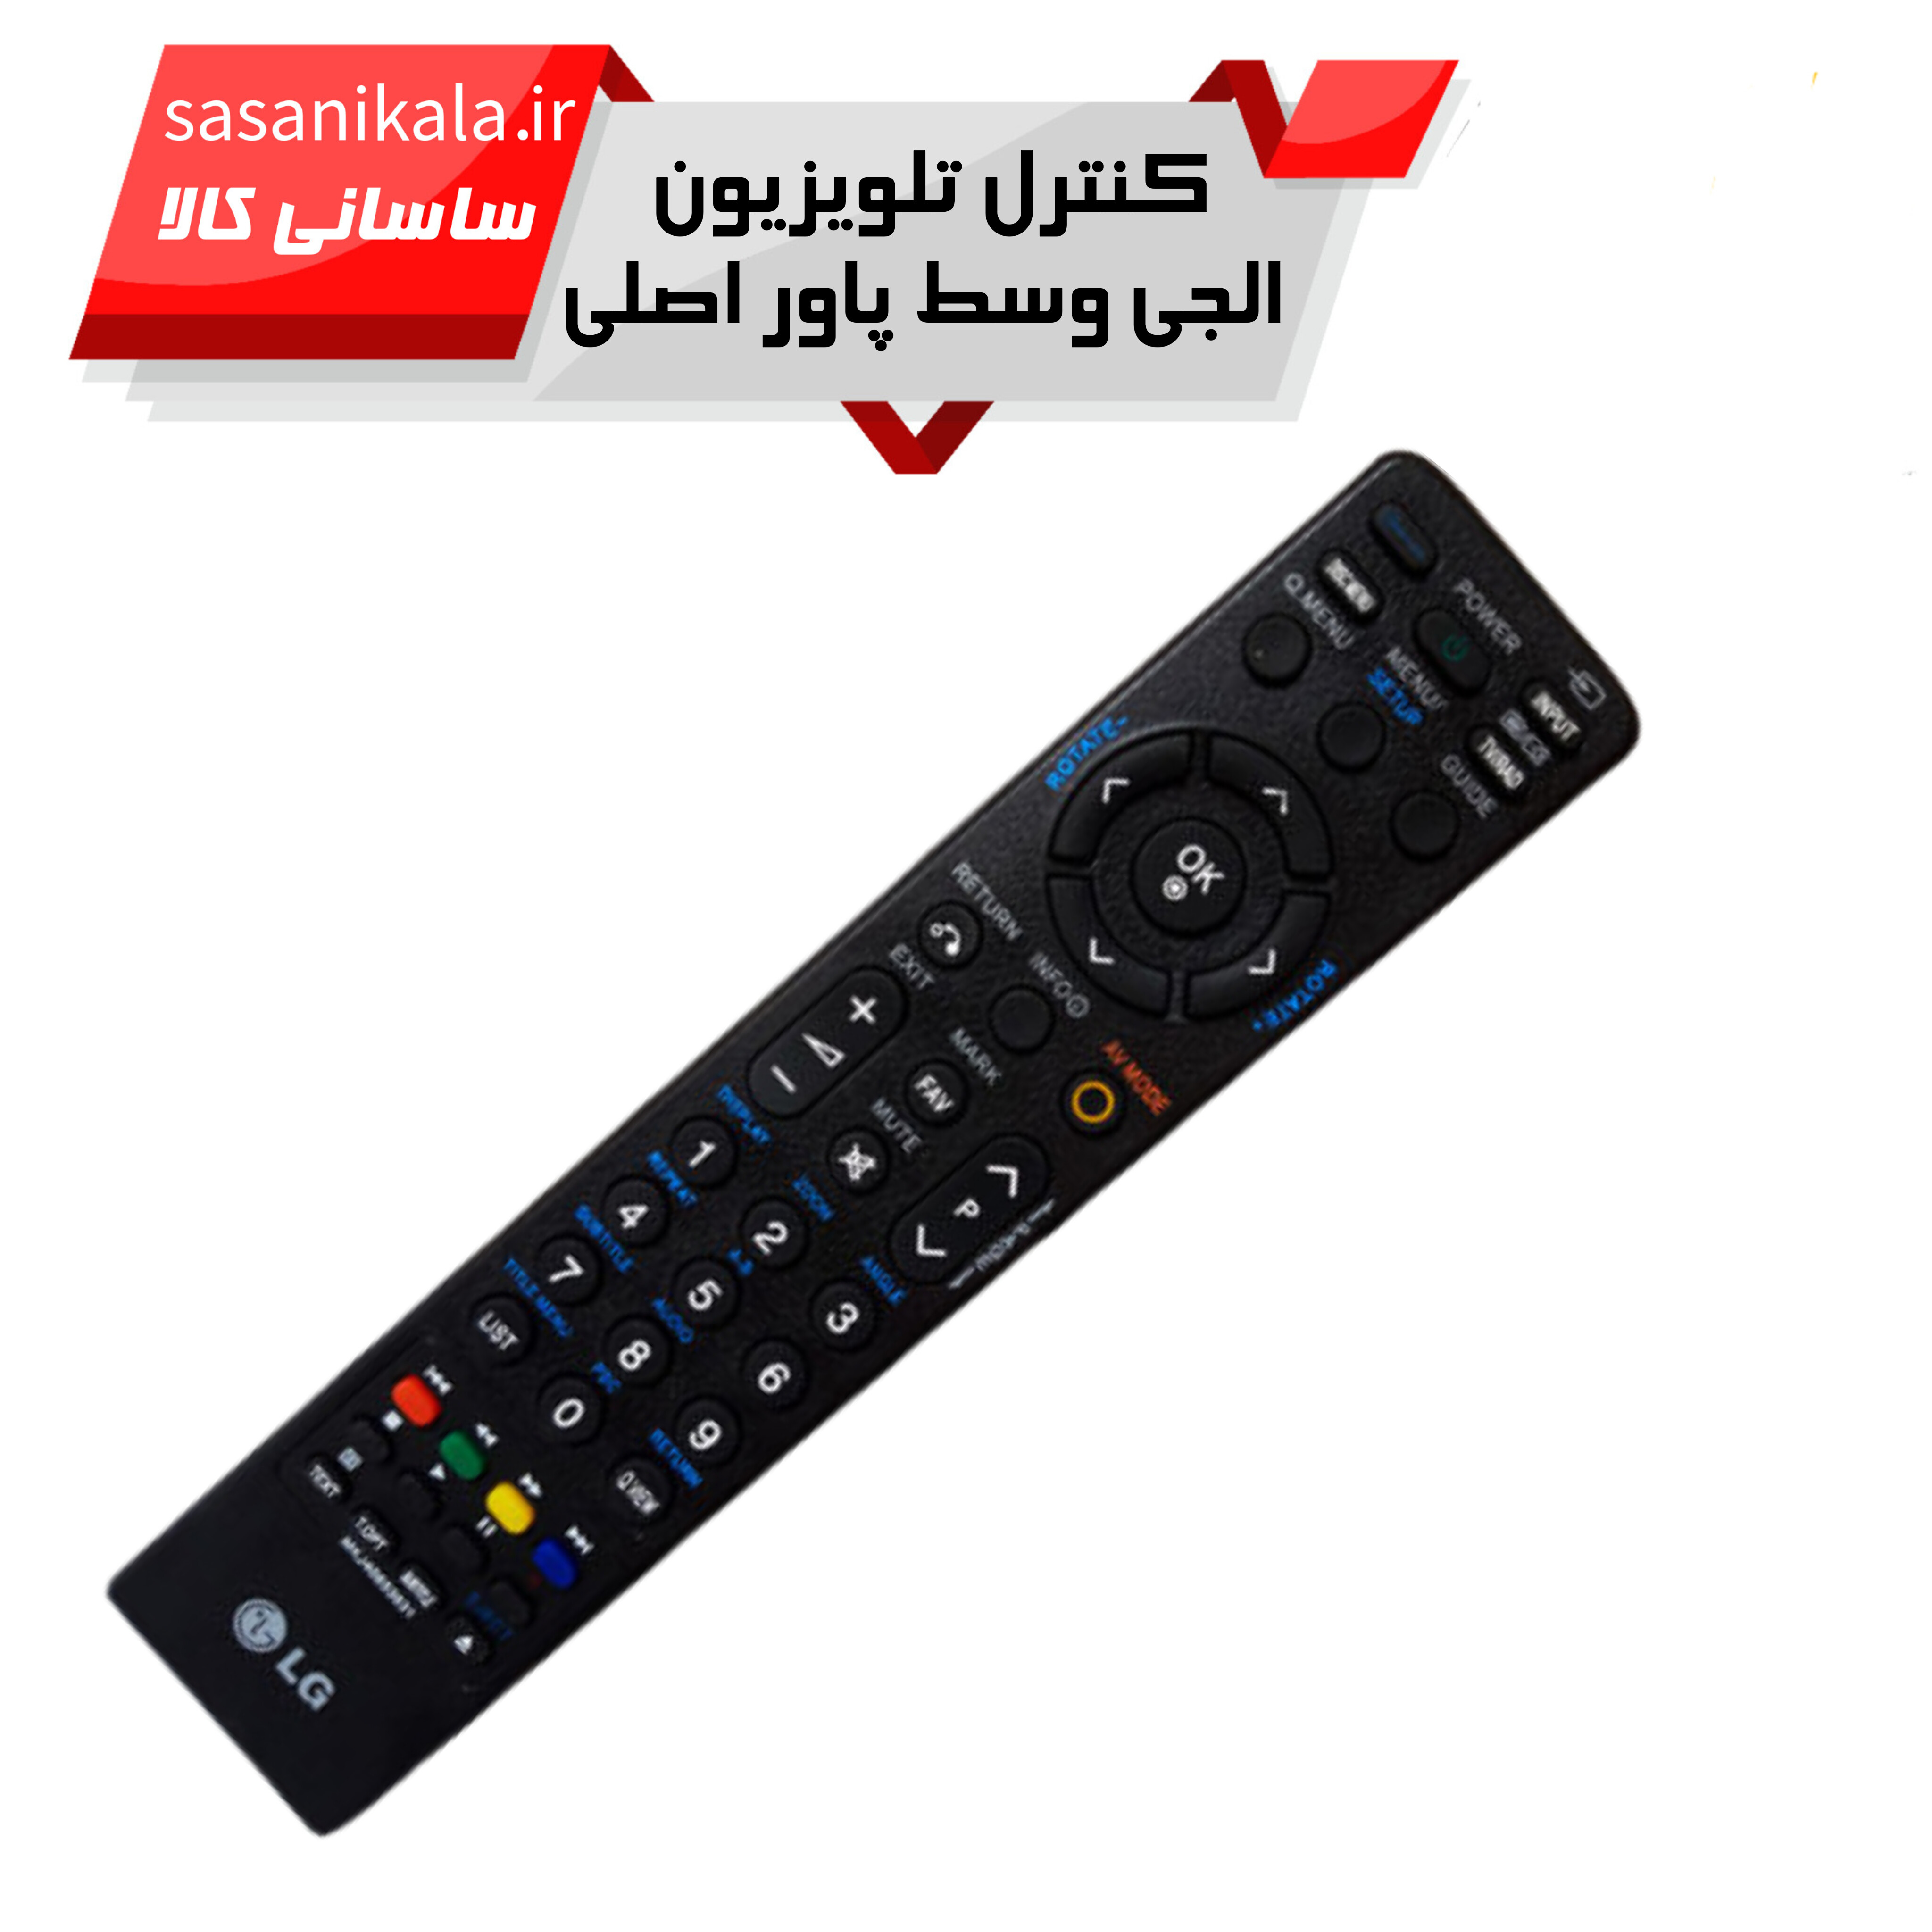 ریموت کنترل تلویزیون ال جی LG MKJ40653831 کیفیت عالی اصلی